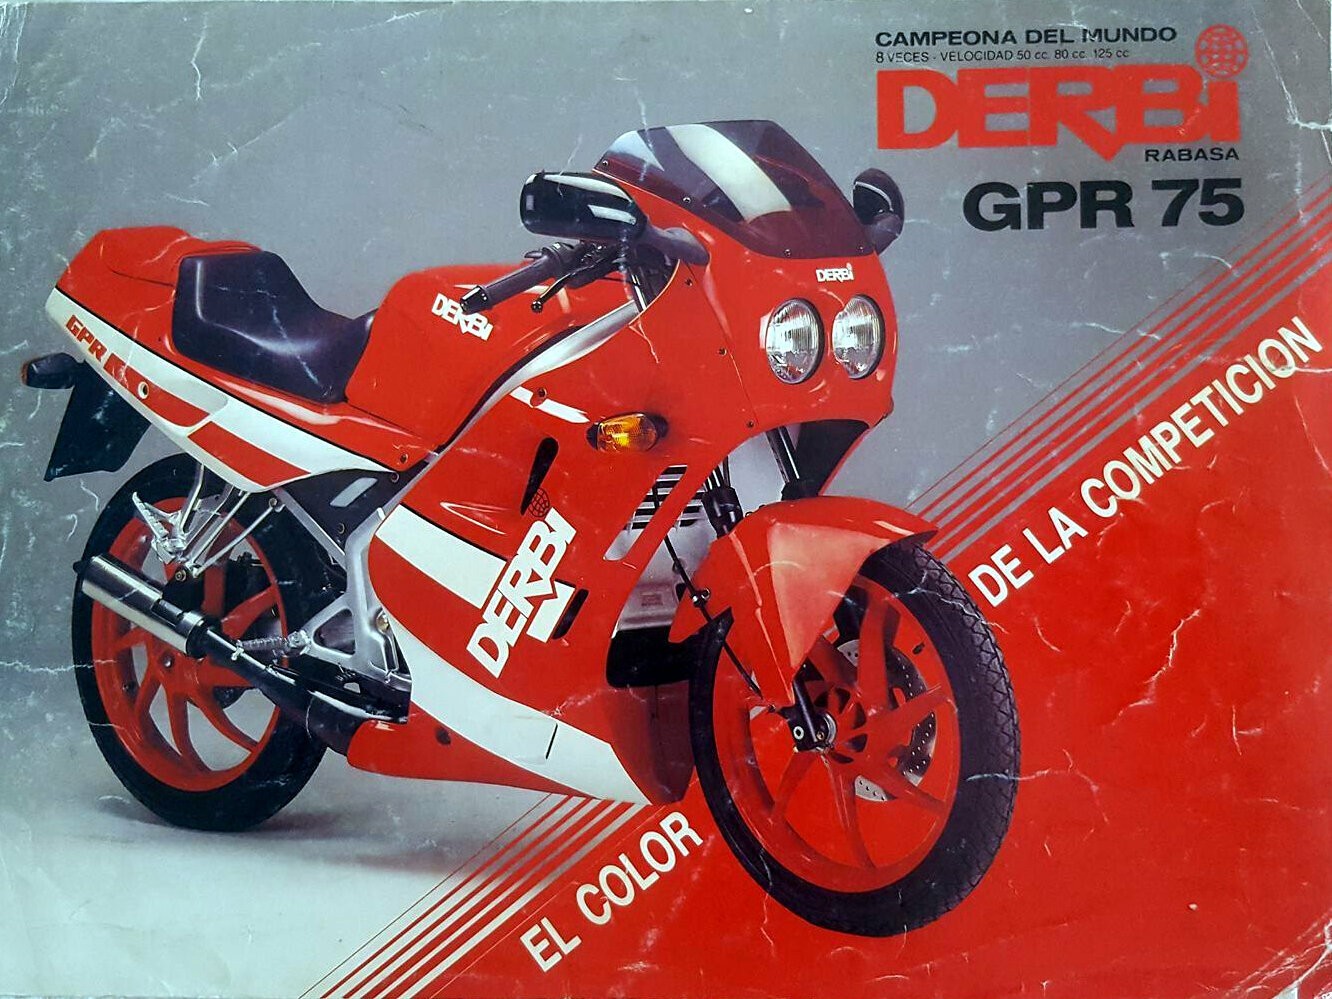 Moto del día: Derbi GPR 75